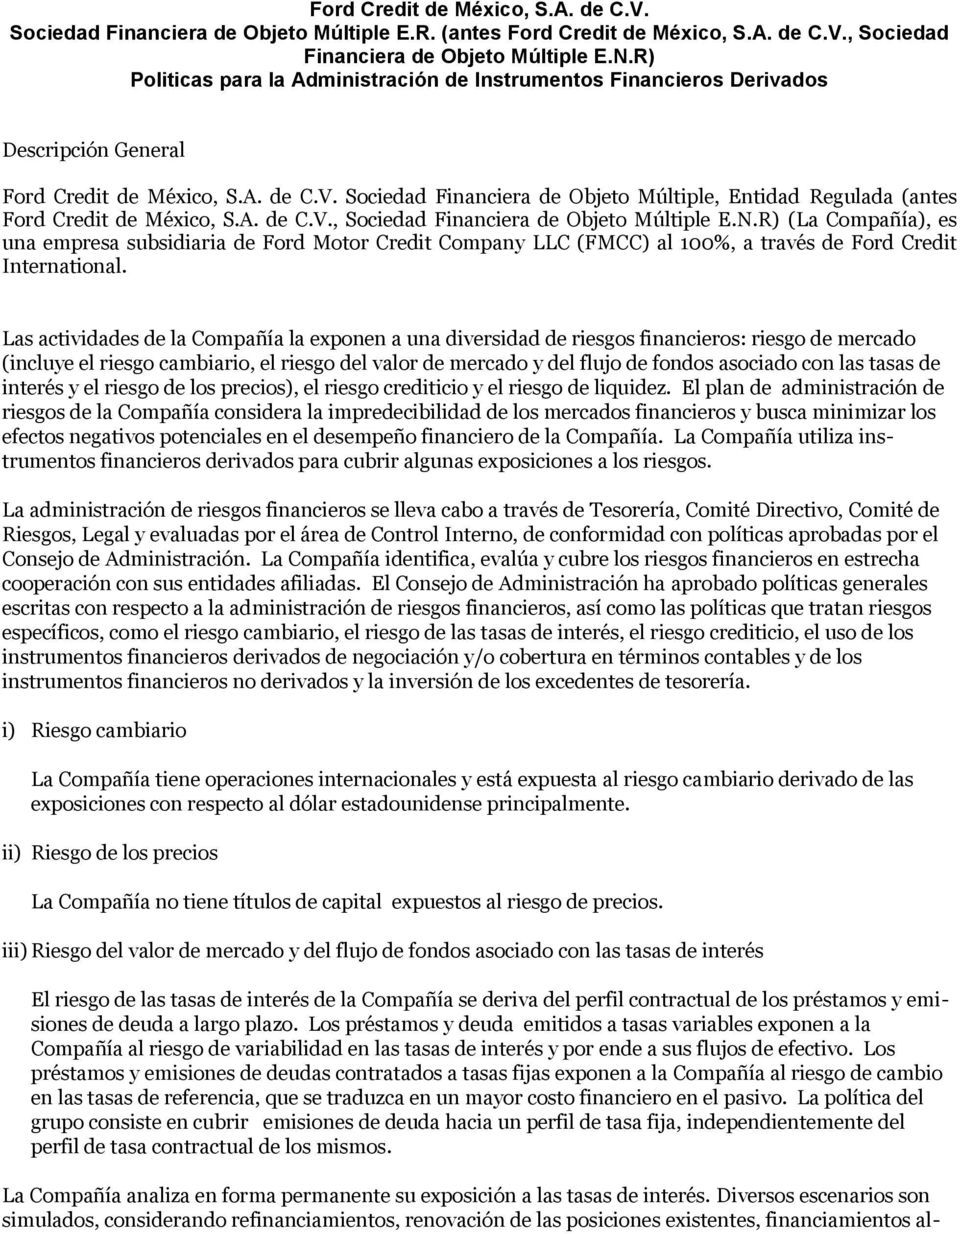 Sociedad Financiera de Objeto Múltiple, Entidad Regulada (antes Ford Credit de México, S.A. de C.V., Sociedad Financiera de Objeto Múltiple E.N.